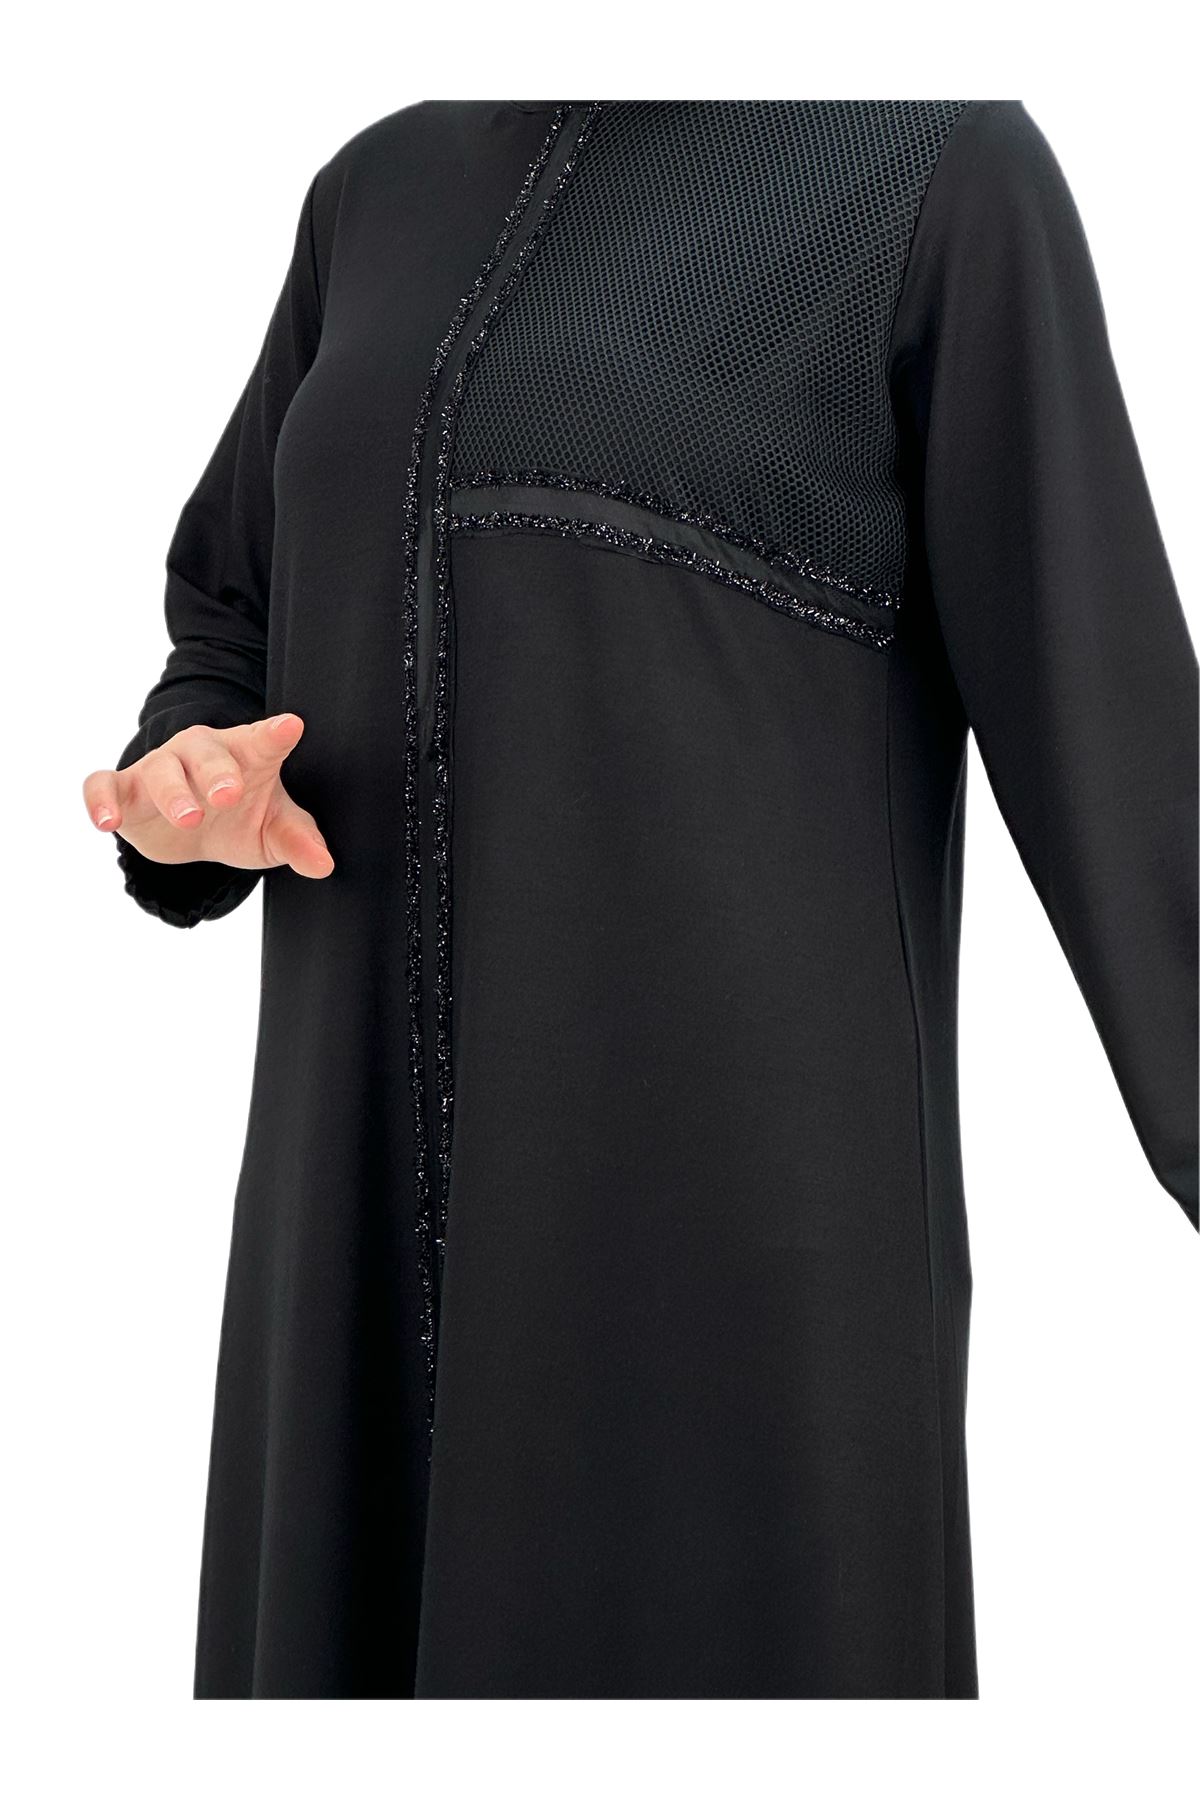 OTW597 Fileli Elbise Siyah